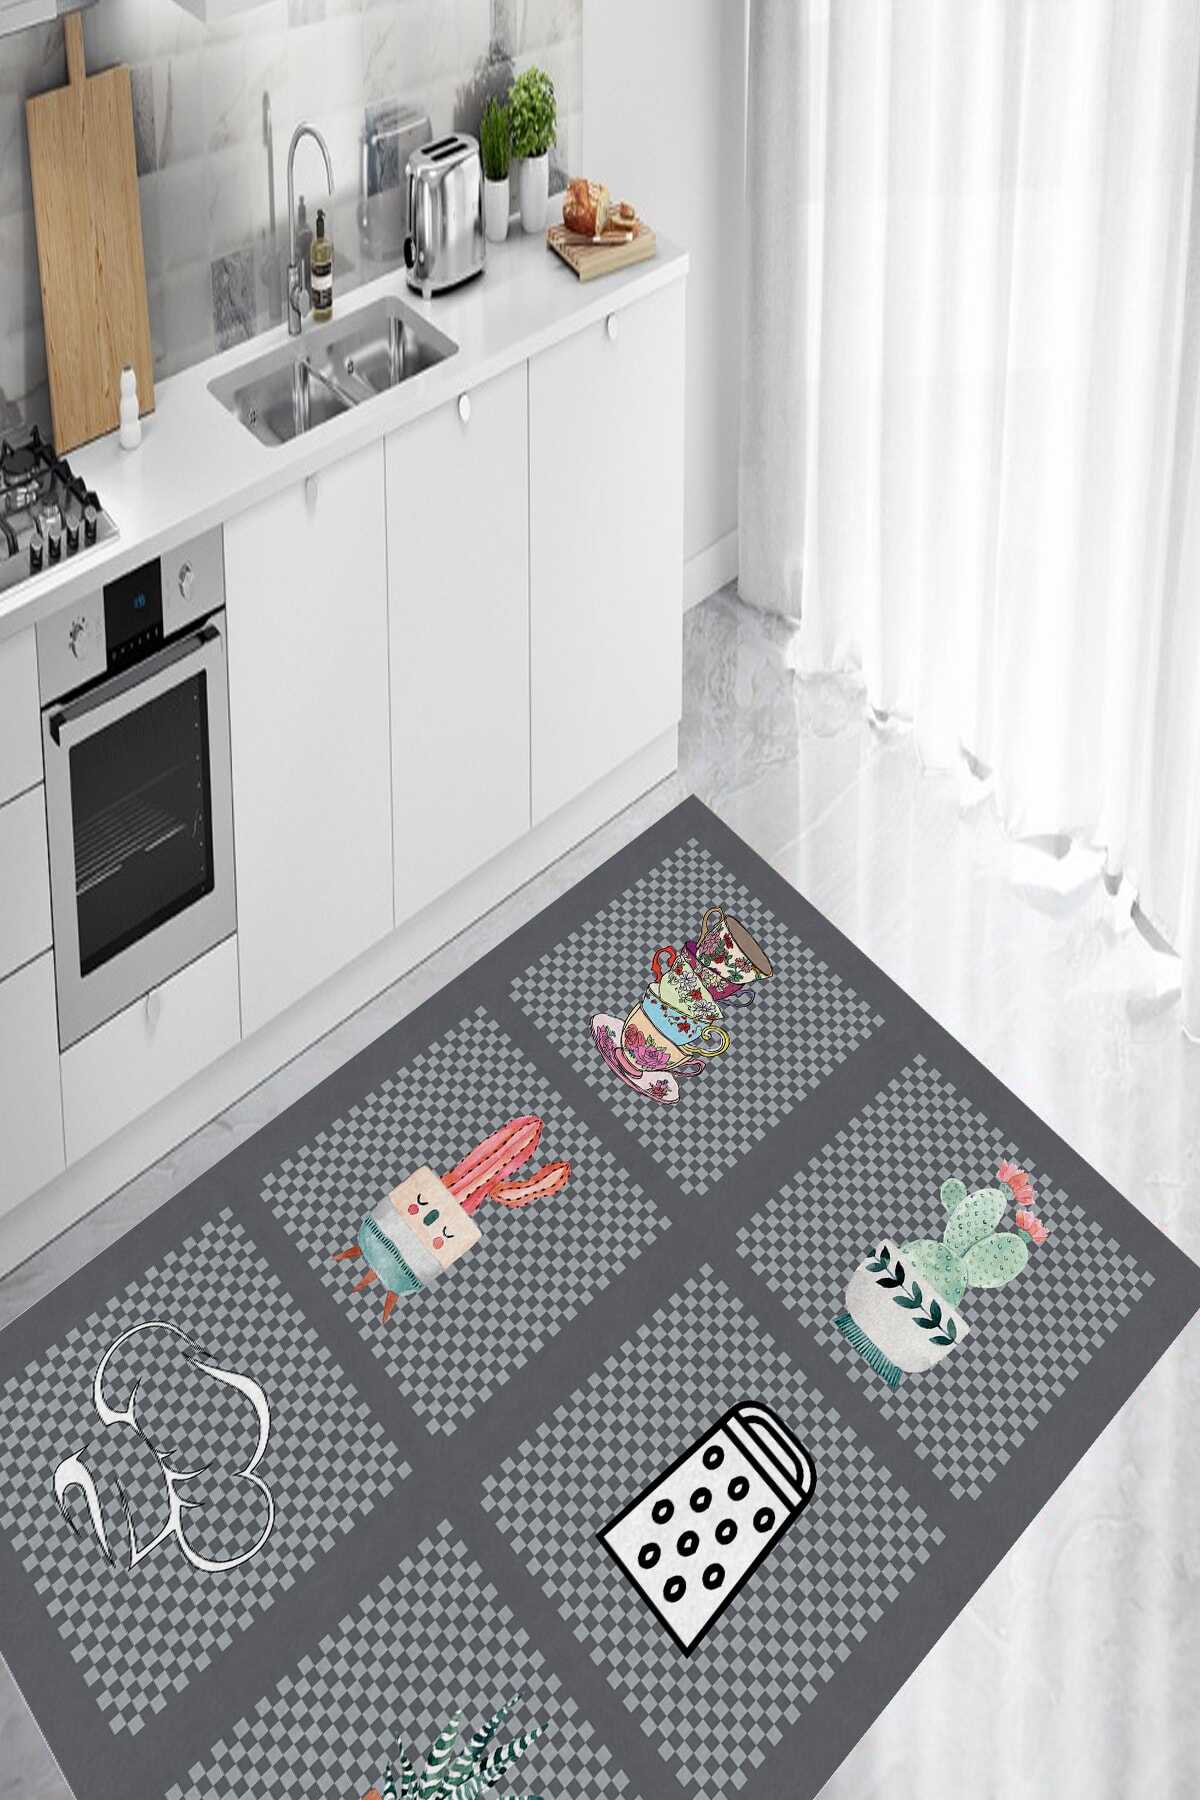 فرش آشپزخانه طرح ظروف چاپ دیجیتال 4-6 متر خاکستری 